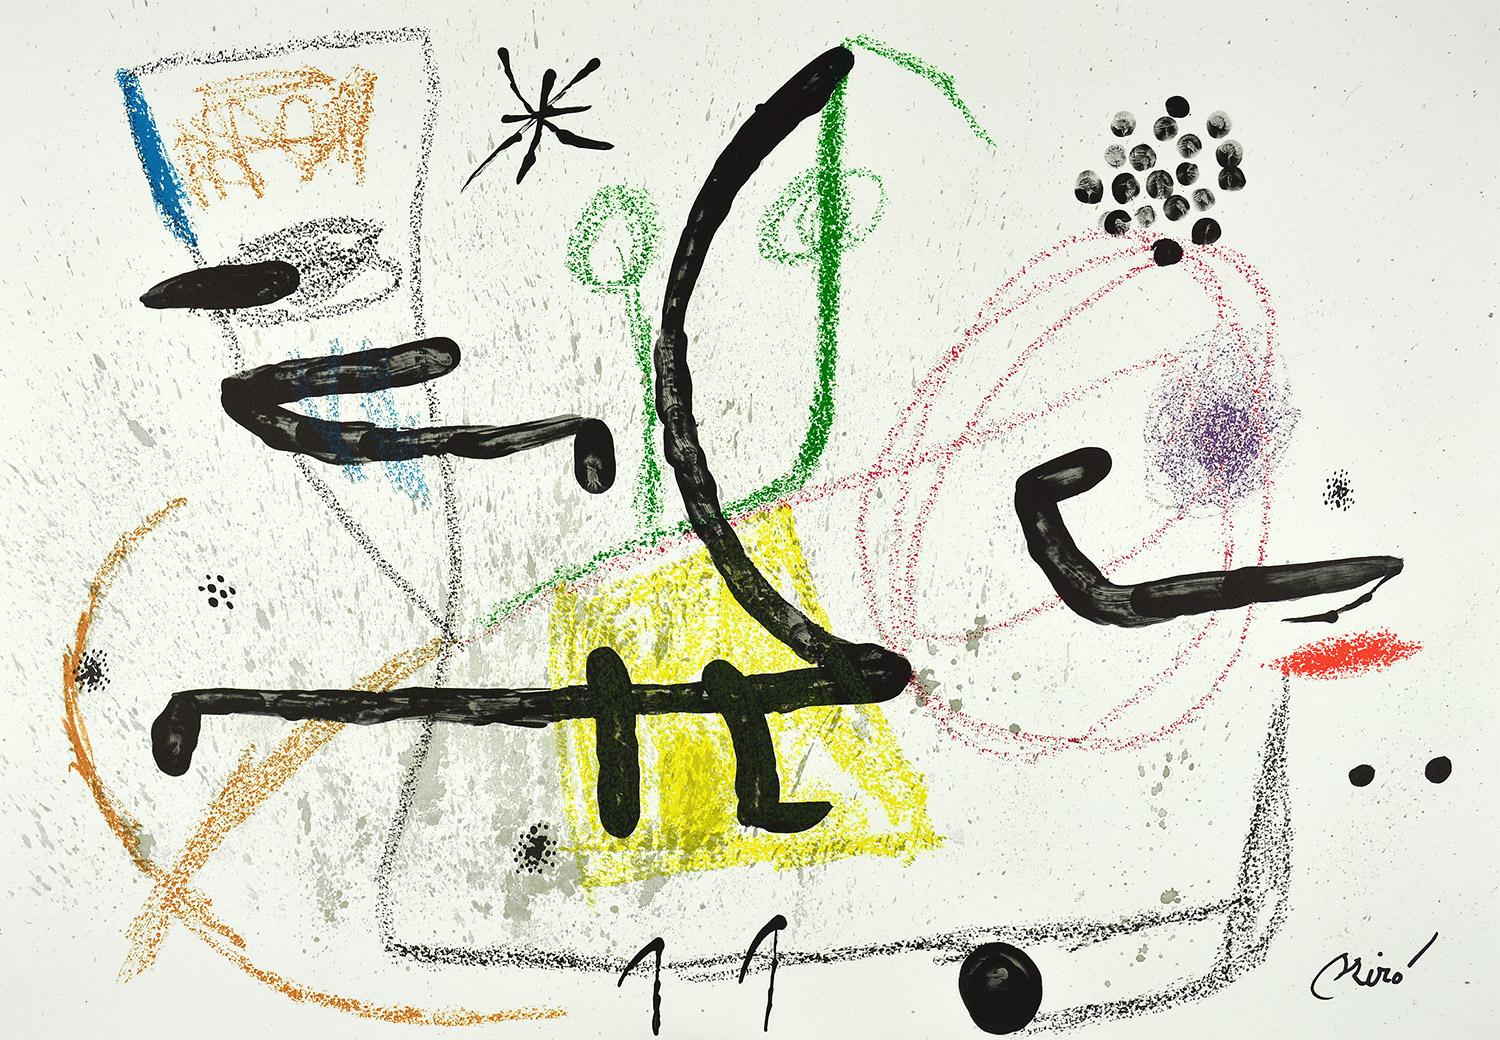 Joan Miró - Maravillas con variaciones acrósticas en el jardín de Miró IX
Date of creation: 1975
Medium: Lithograph
Media: Gvarro paper
Edition: 1500
Size: 49,5 x 71 cm
Observations:
Lithograph on Gvarro paper plate signed. Edited by Polígrafa,